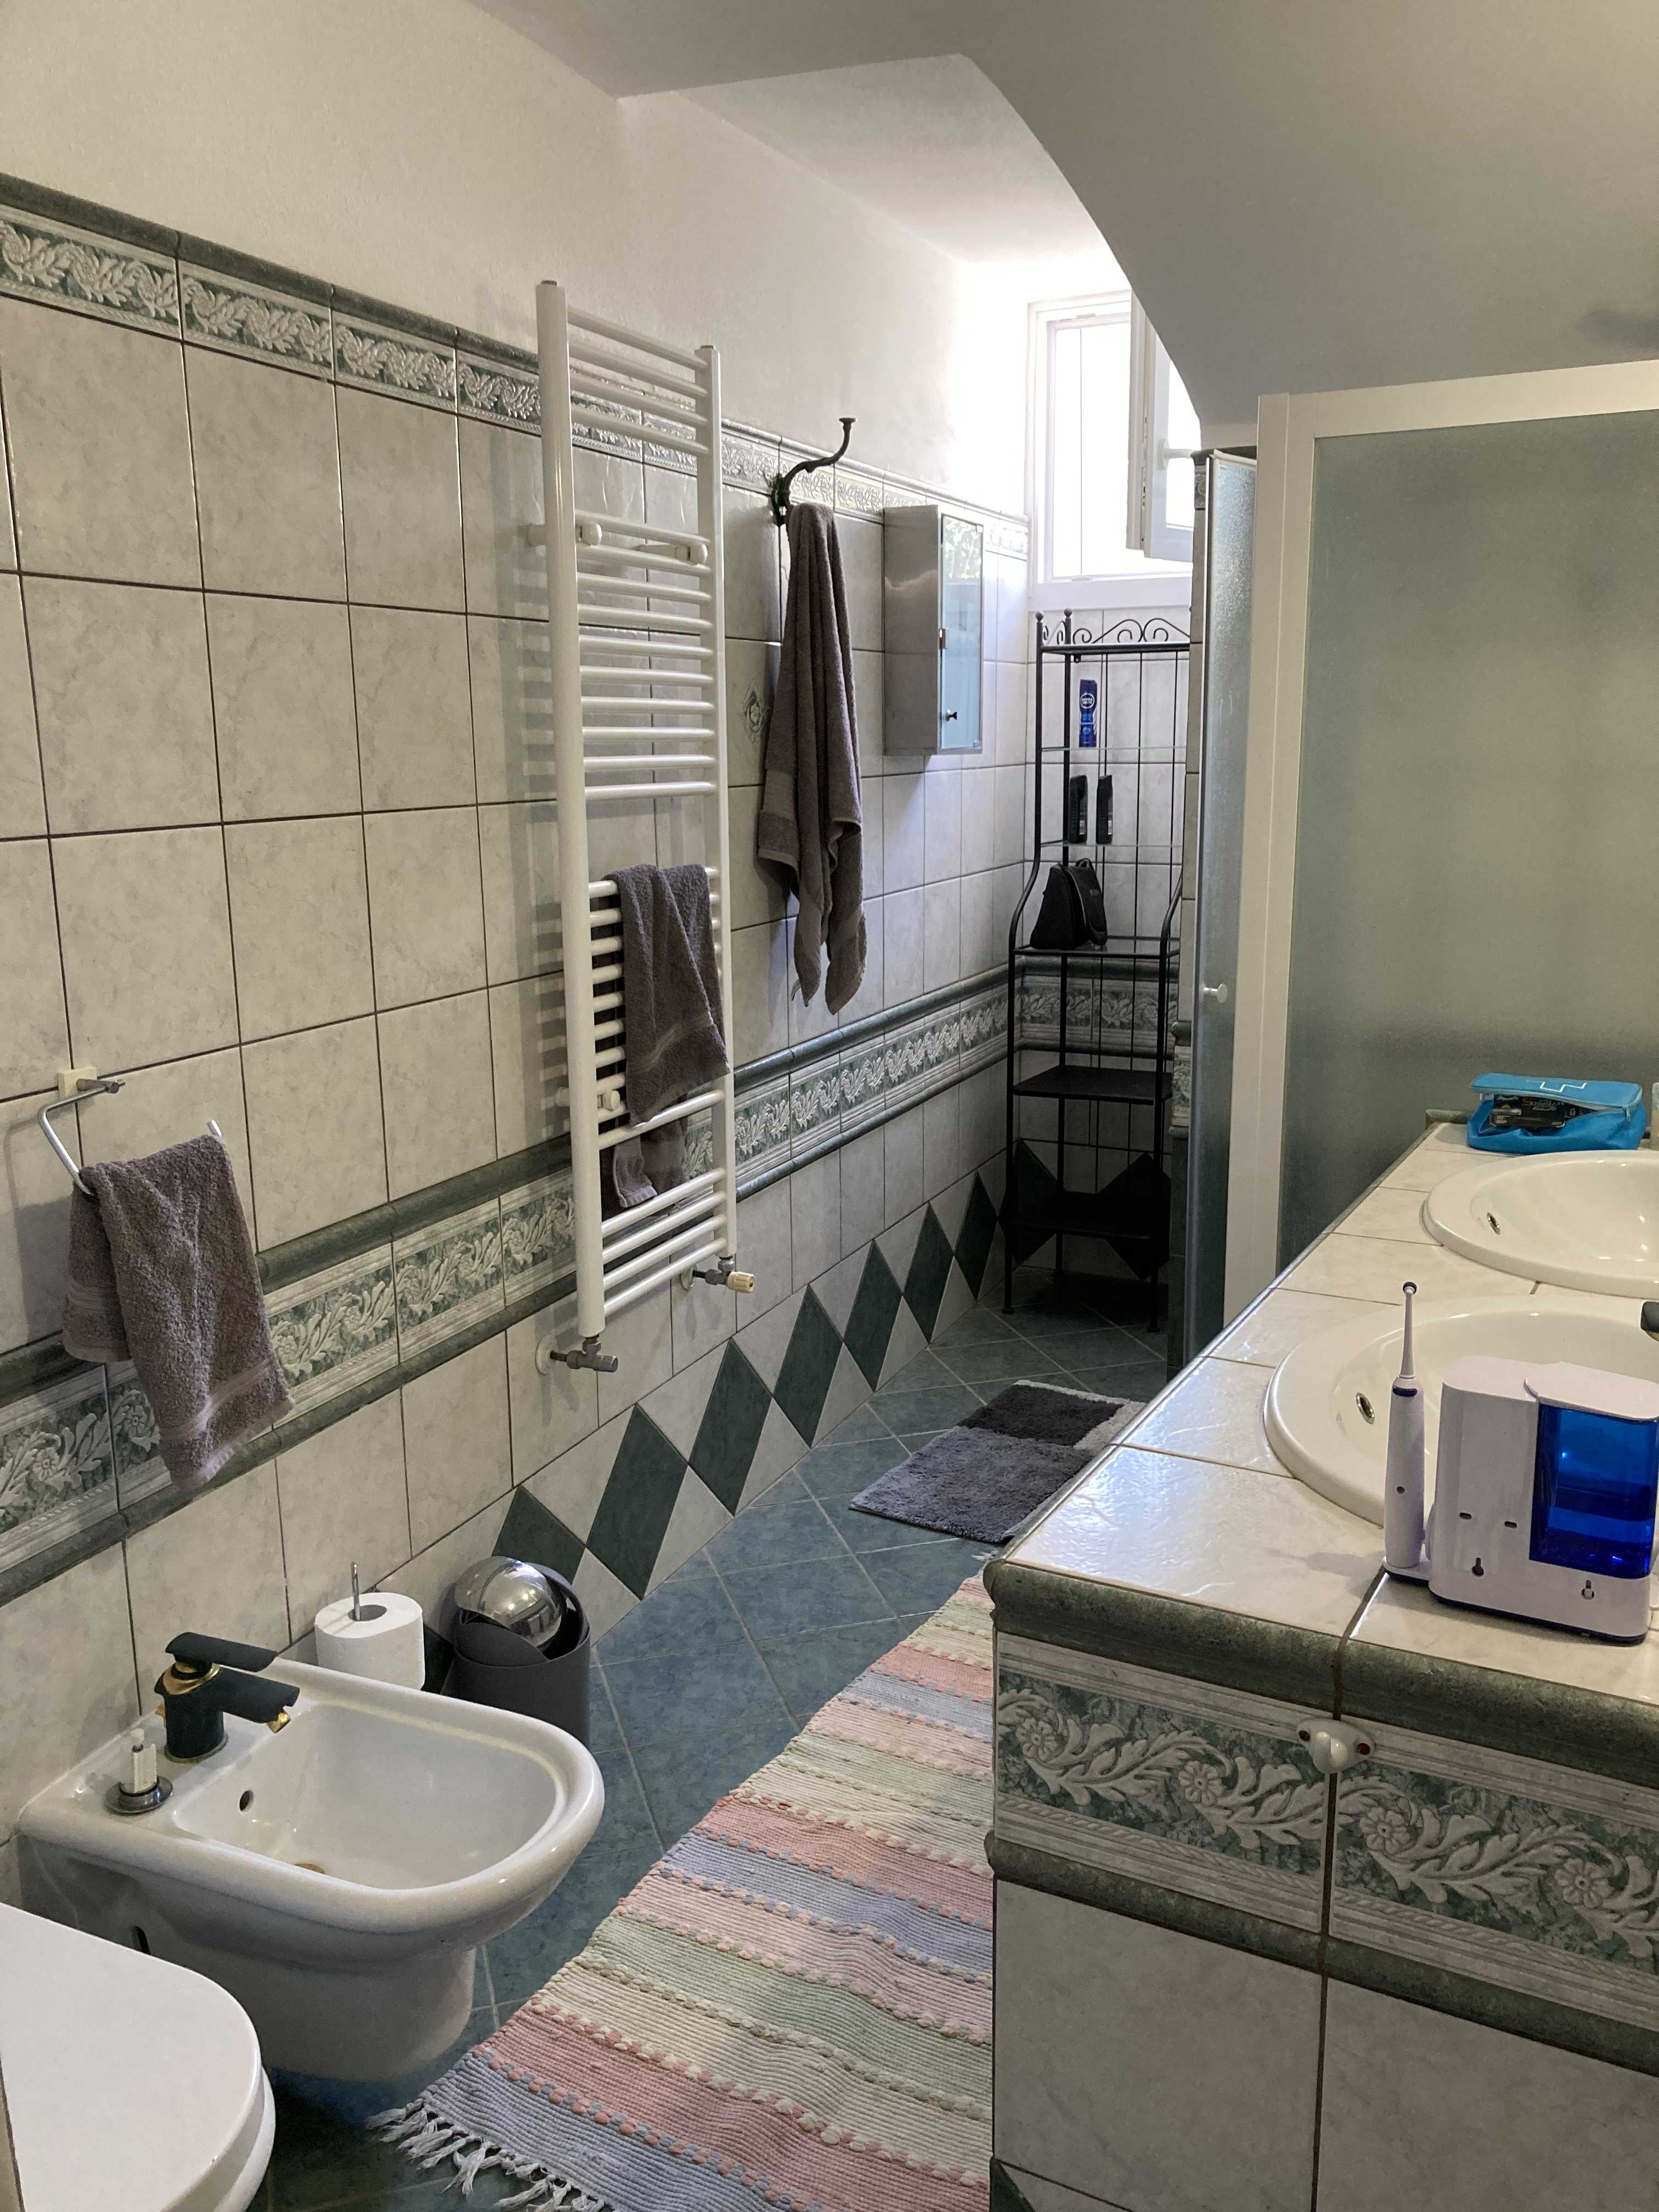 Vendite Salento: Vendita appartamento (Castrignano del Capo) - bagno